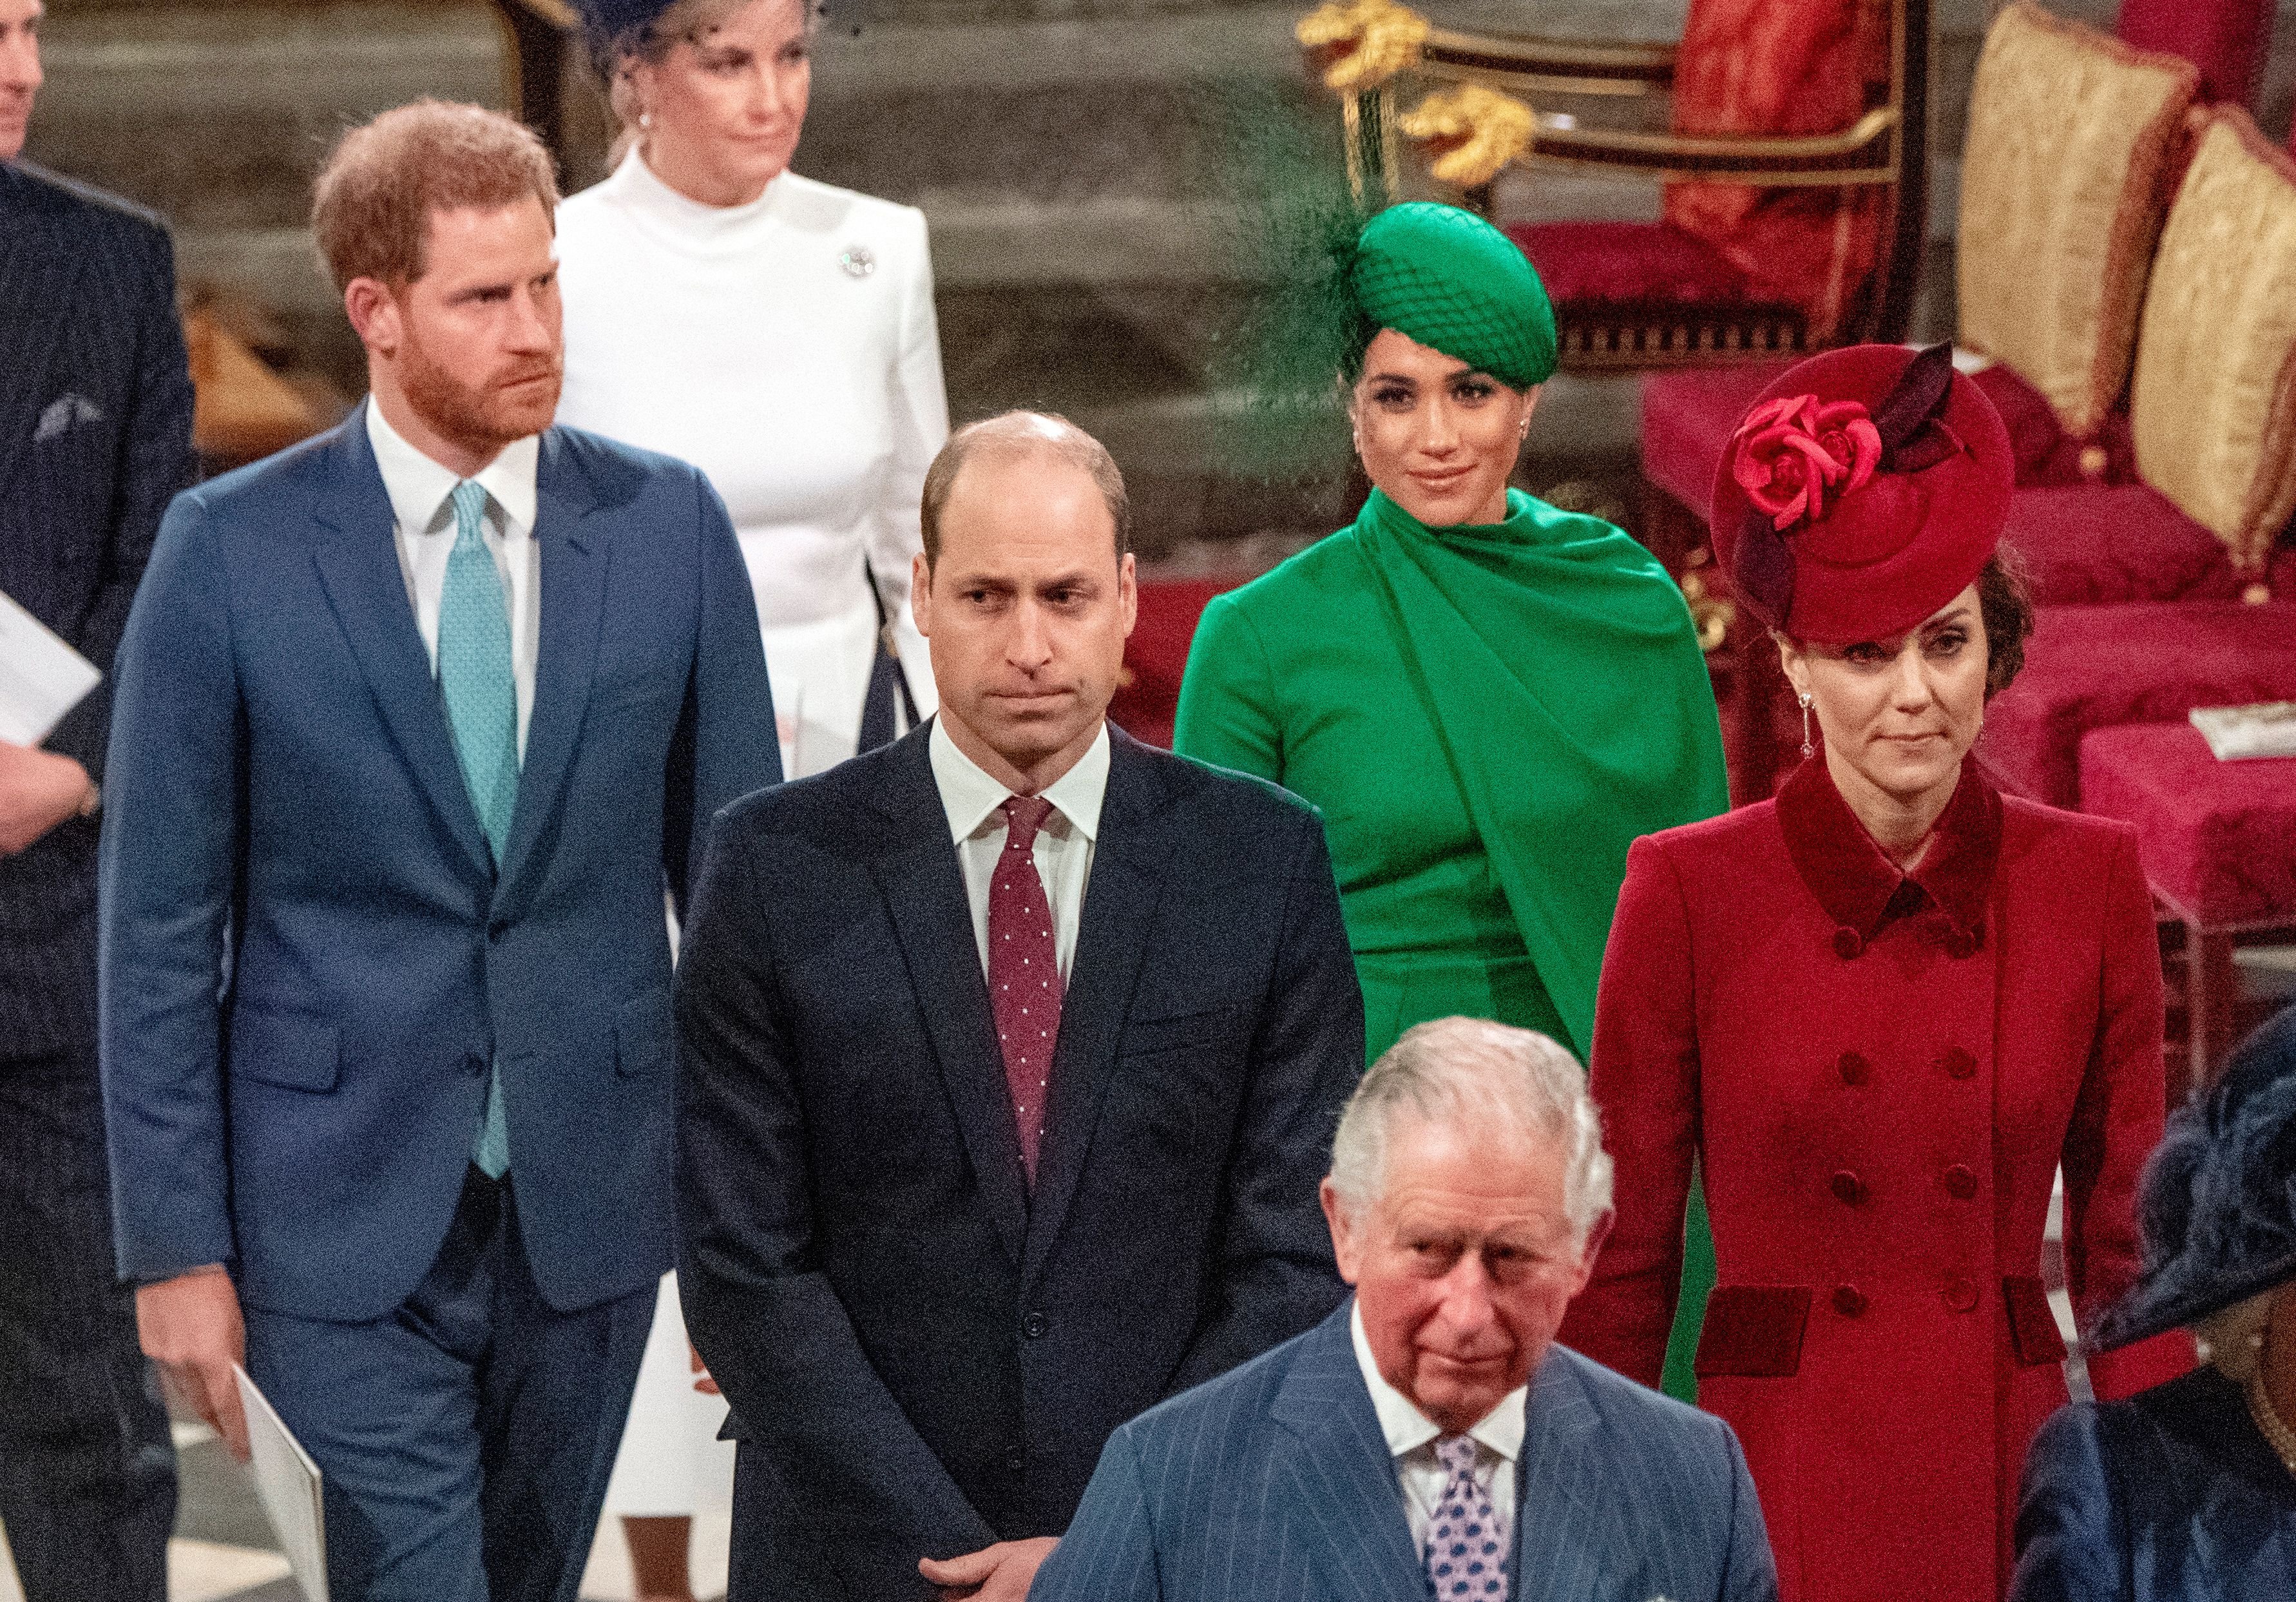 El príncipe Harry y Meghan Markle detrás del príncipe William y Kate Middleton cuando salían de la Abadía de Westminster tras asistir al Servicio de la Commonwealth anual en Londres, el 9 de marzo de 2020. | Foto: Getty Images